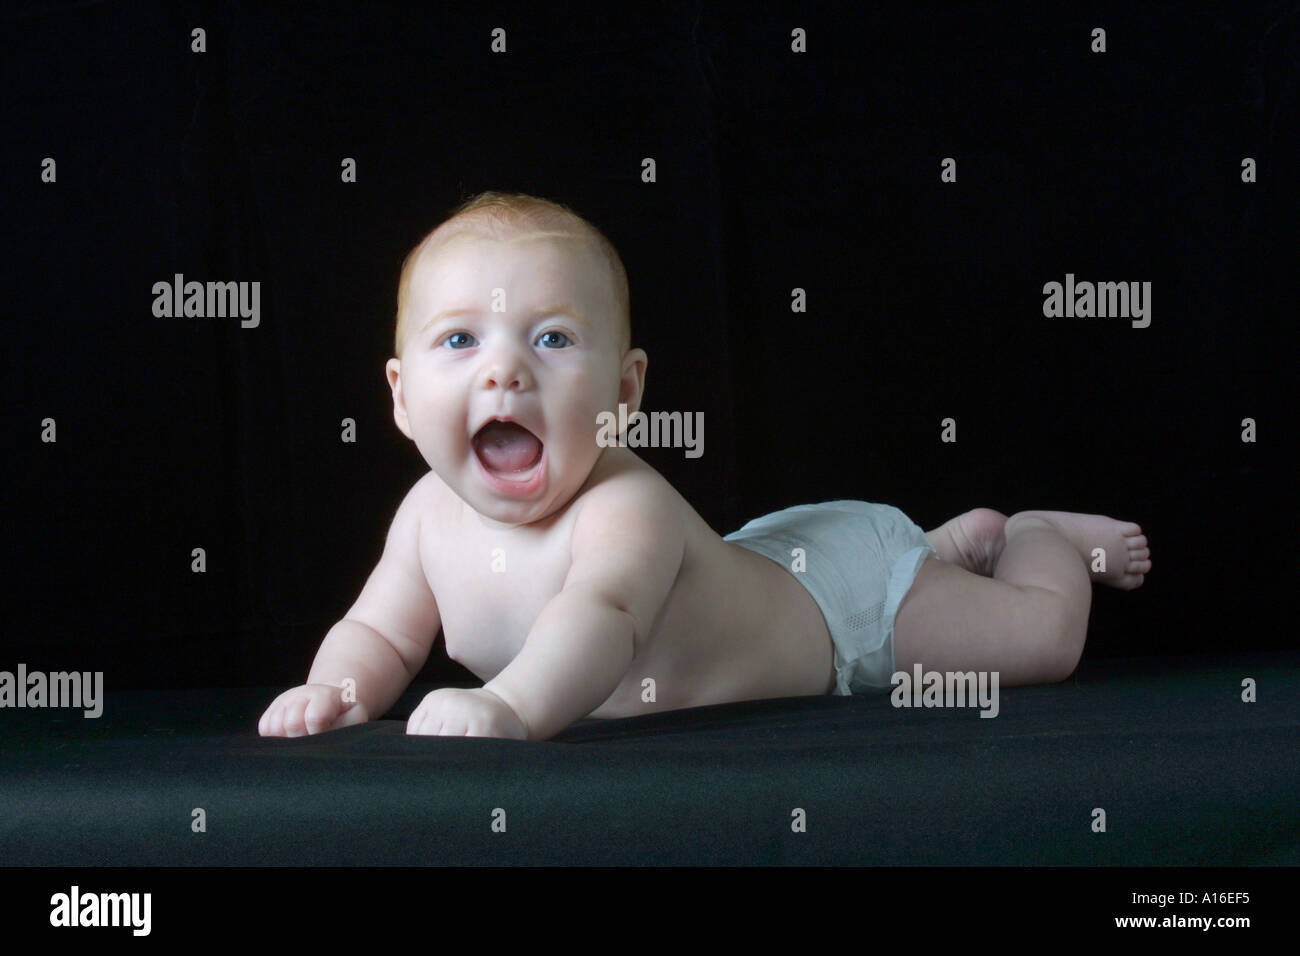 baby girl wearing diaper on black velvet background Stock Photo